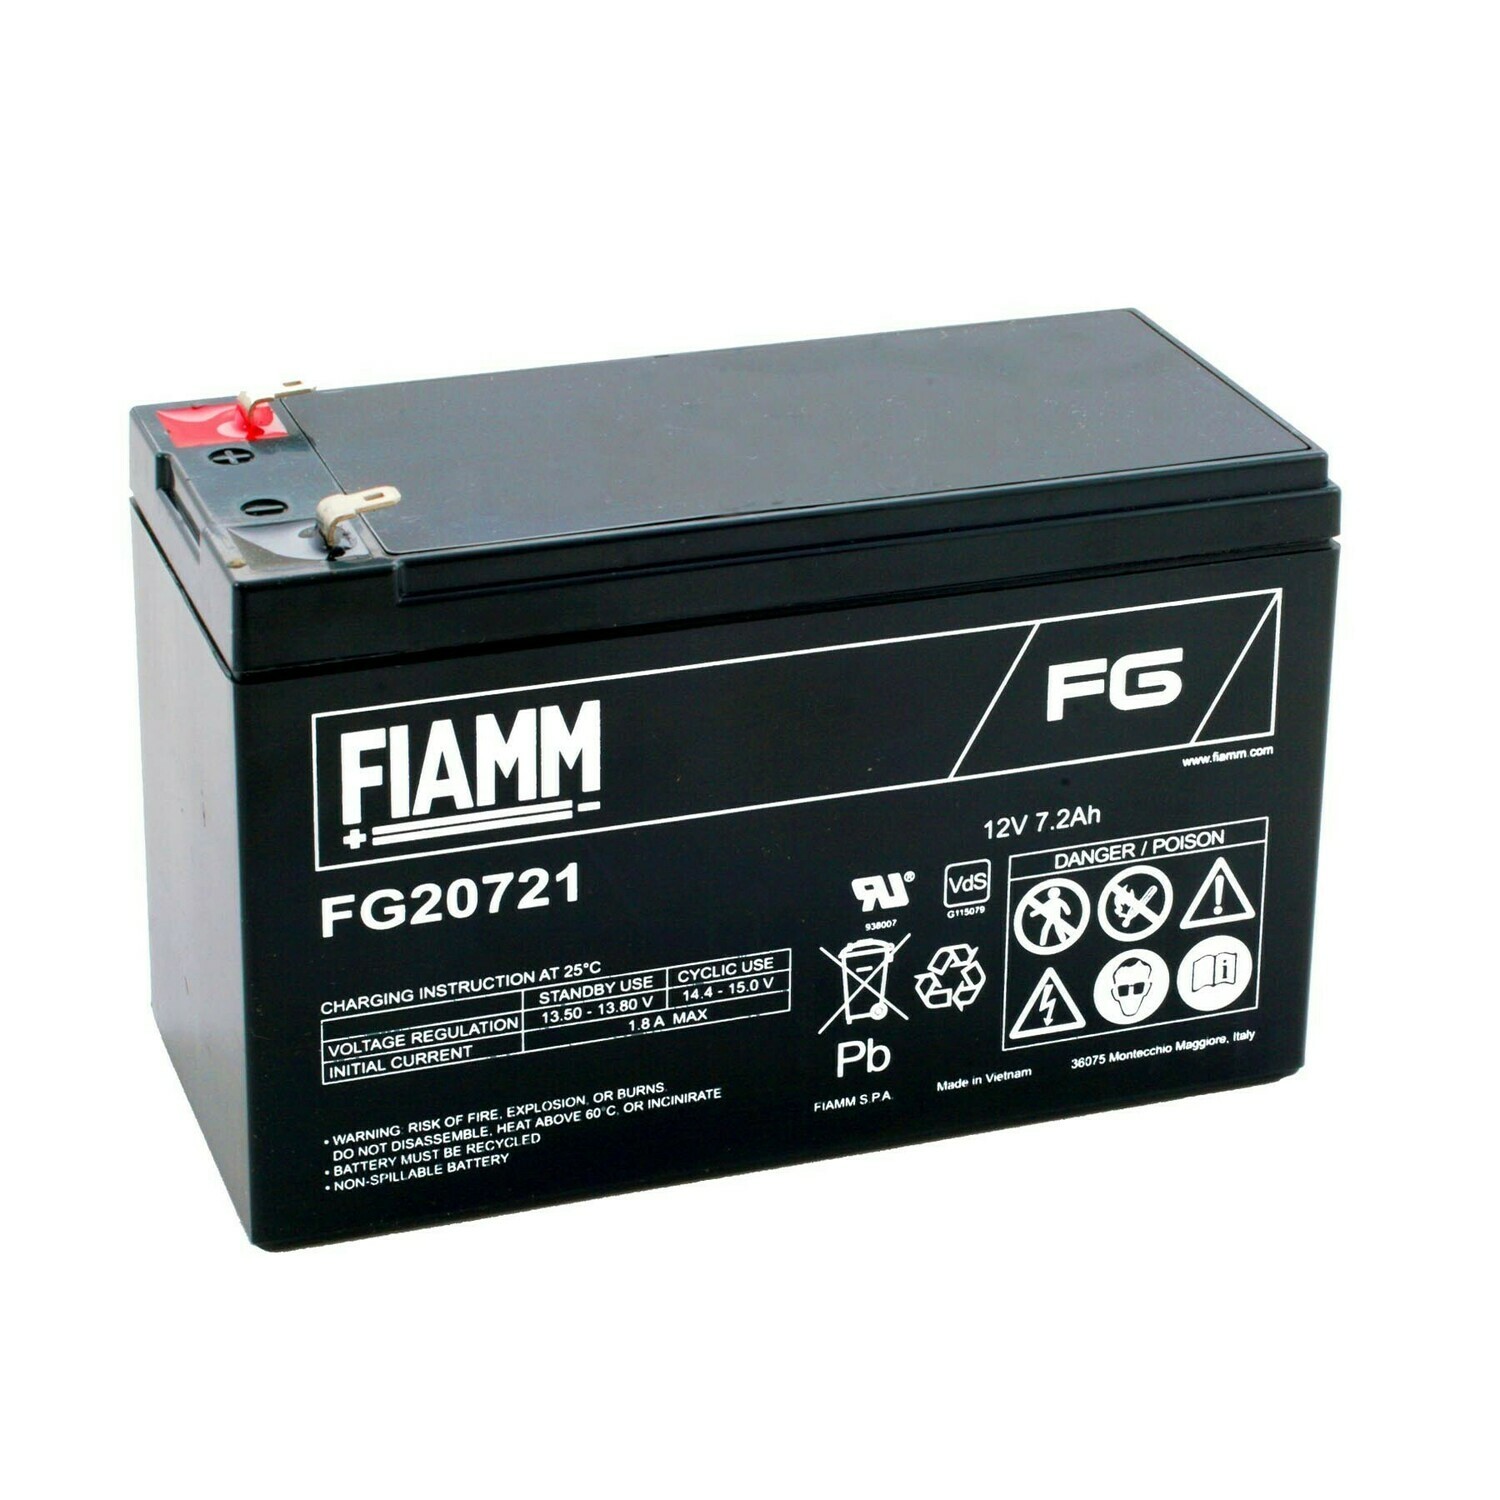 FIAMM 12V 7.2Ah battery